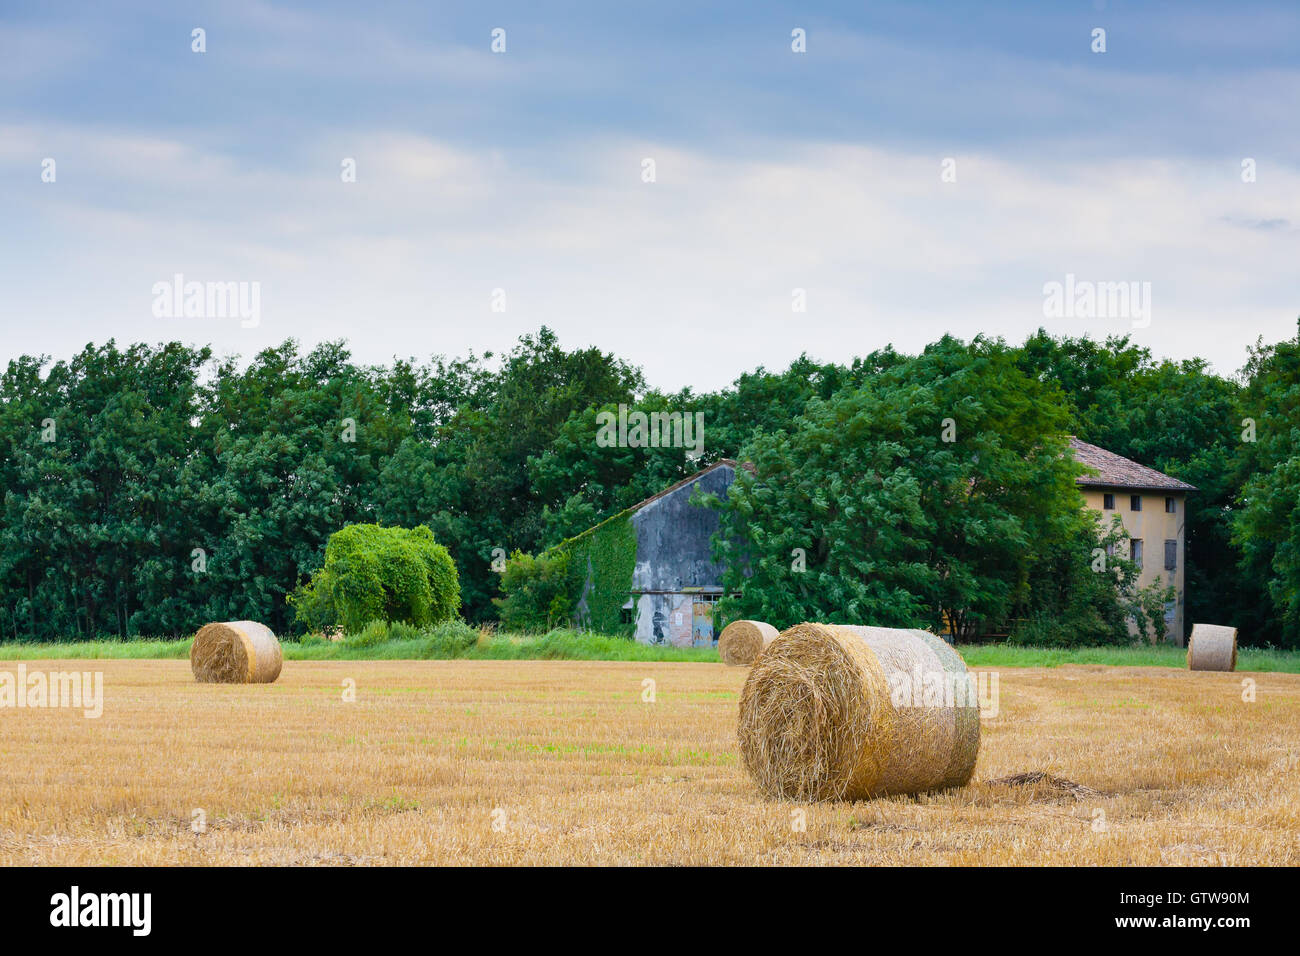 Campagne italienne panorama. Les balles rondes sur champ de blé. L'agriculture, de la vie rurale Banque D'Images